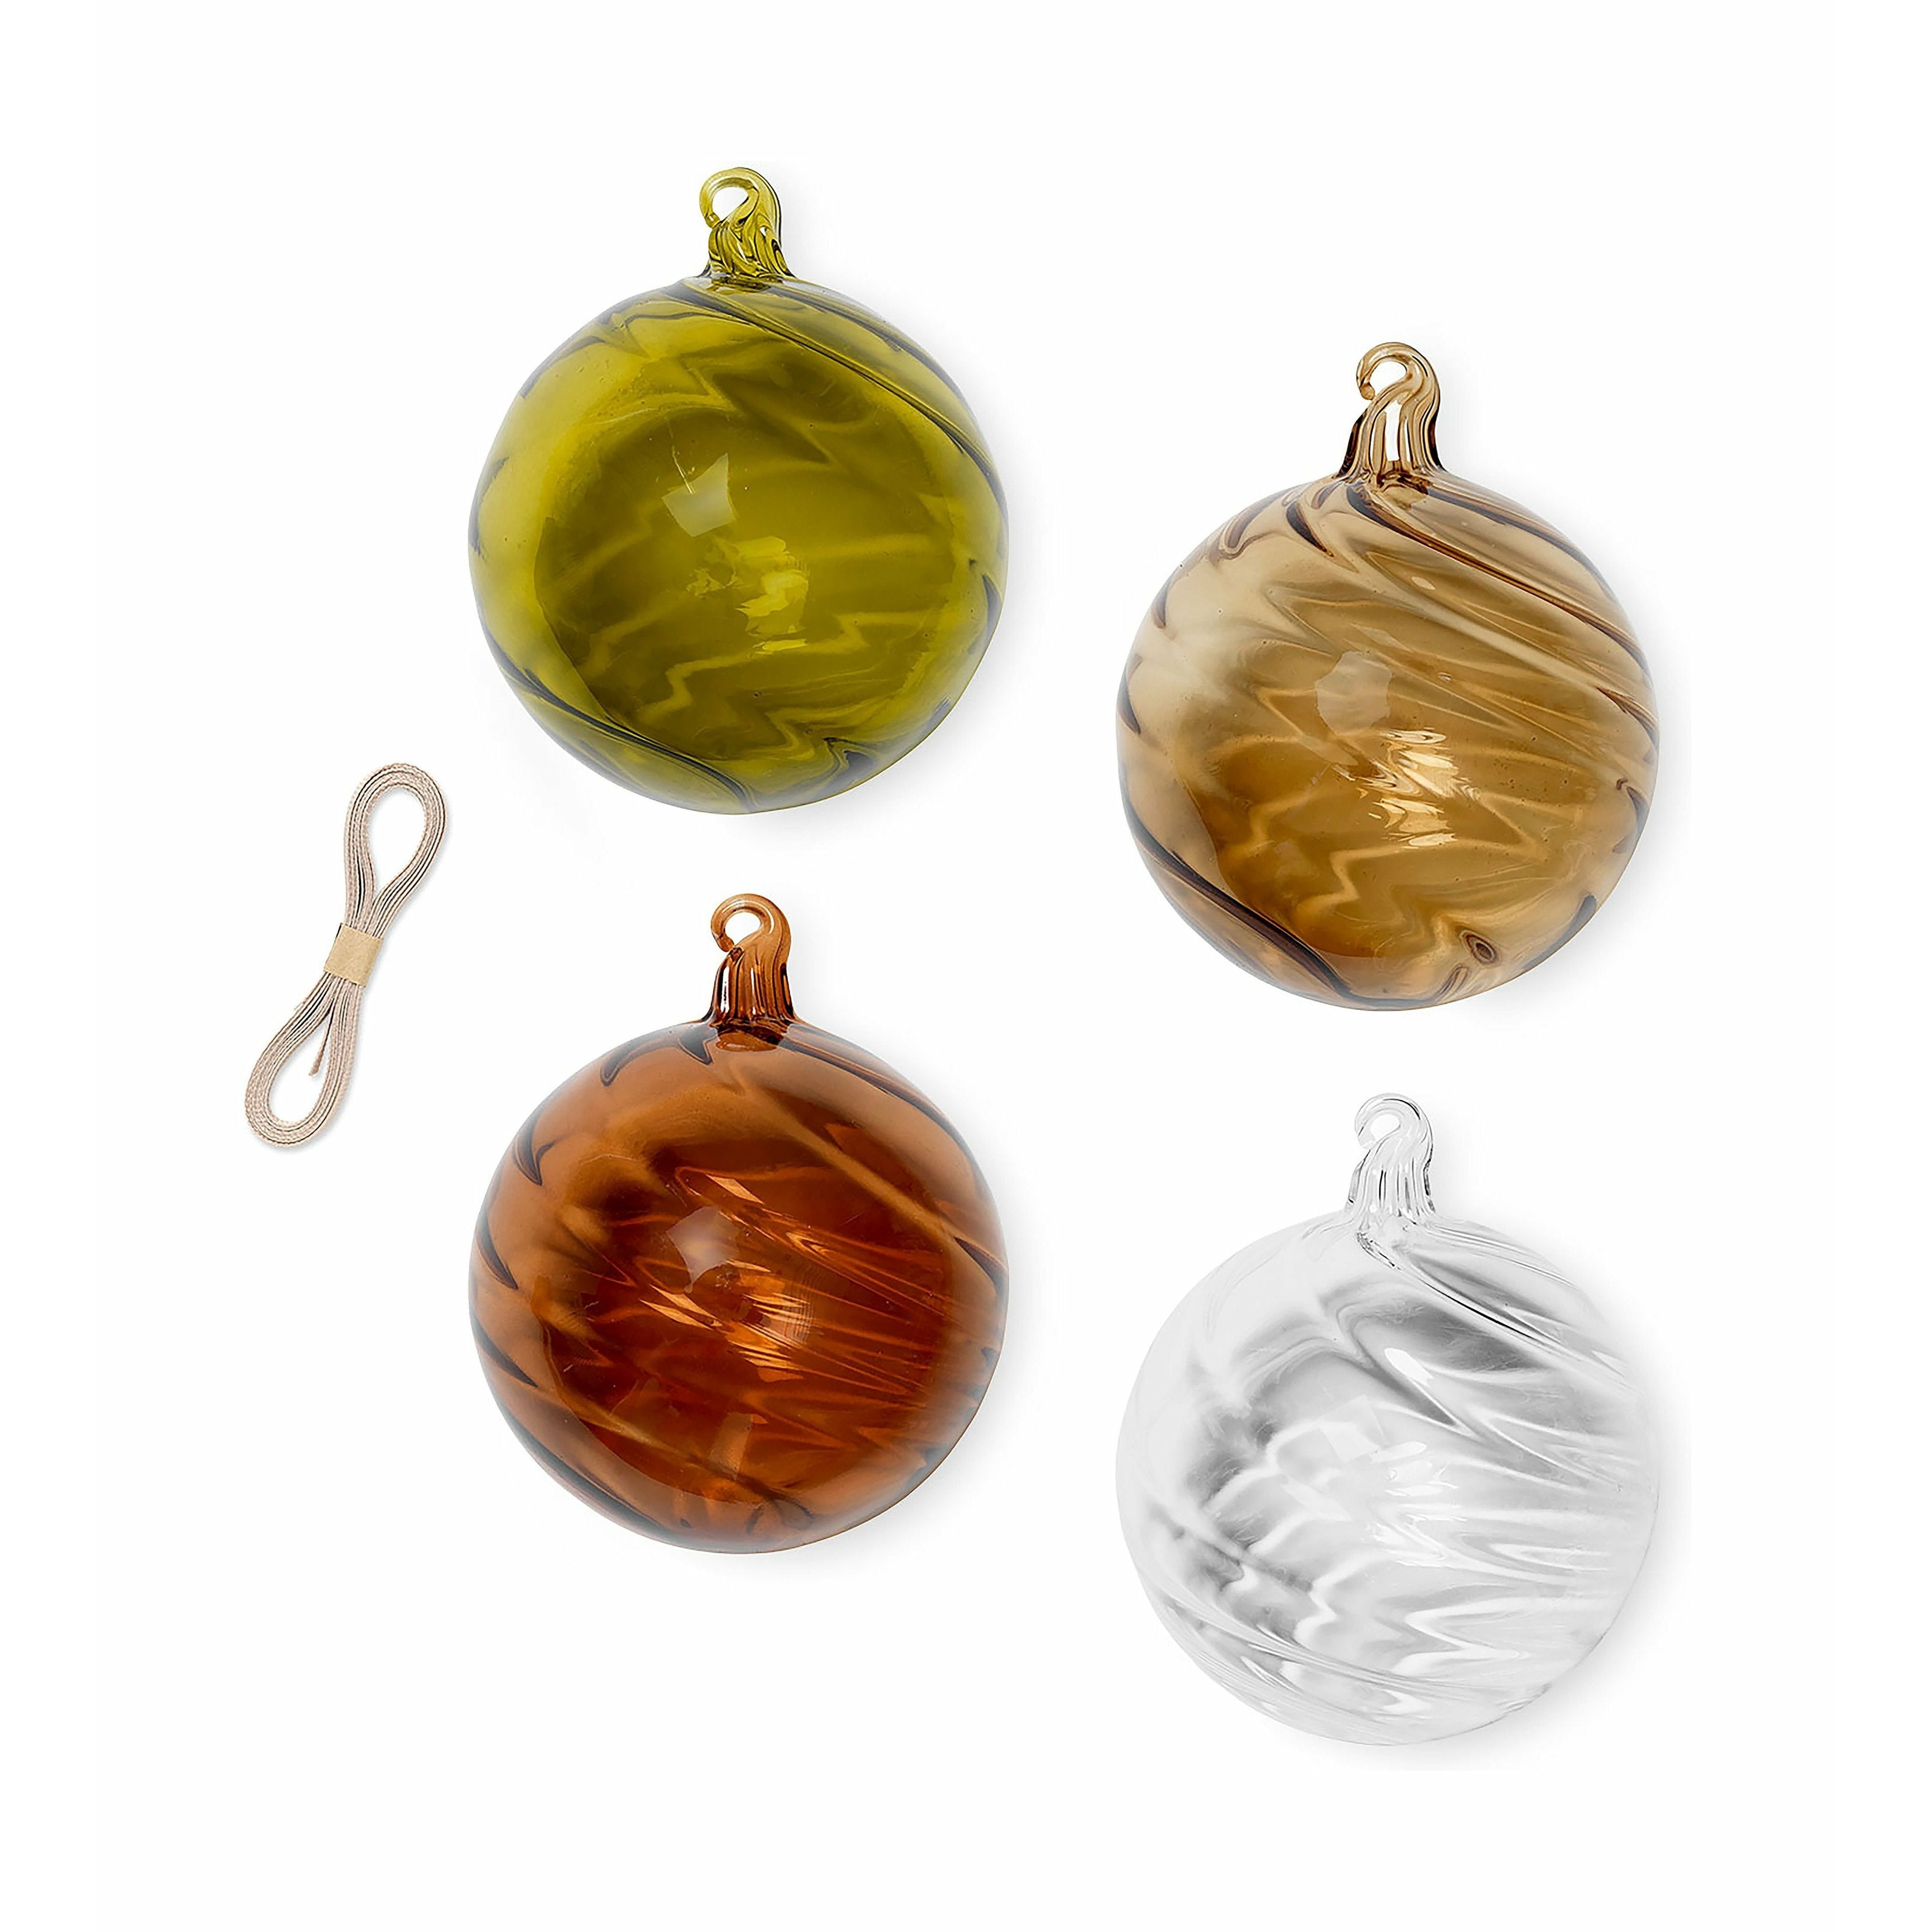 Ferm Living Twirl Ornaments Set Of 4, øx H 10x11 Cm